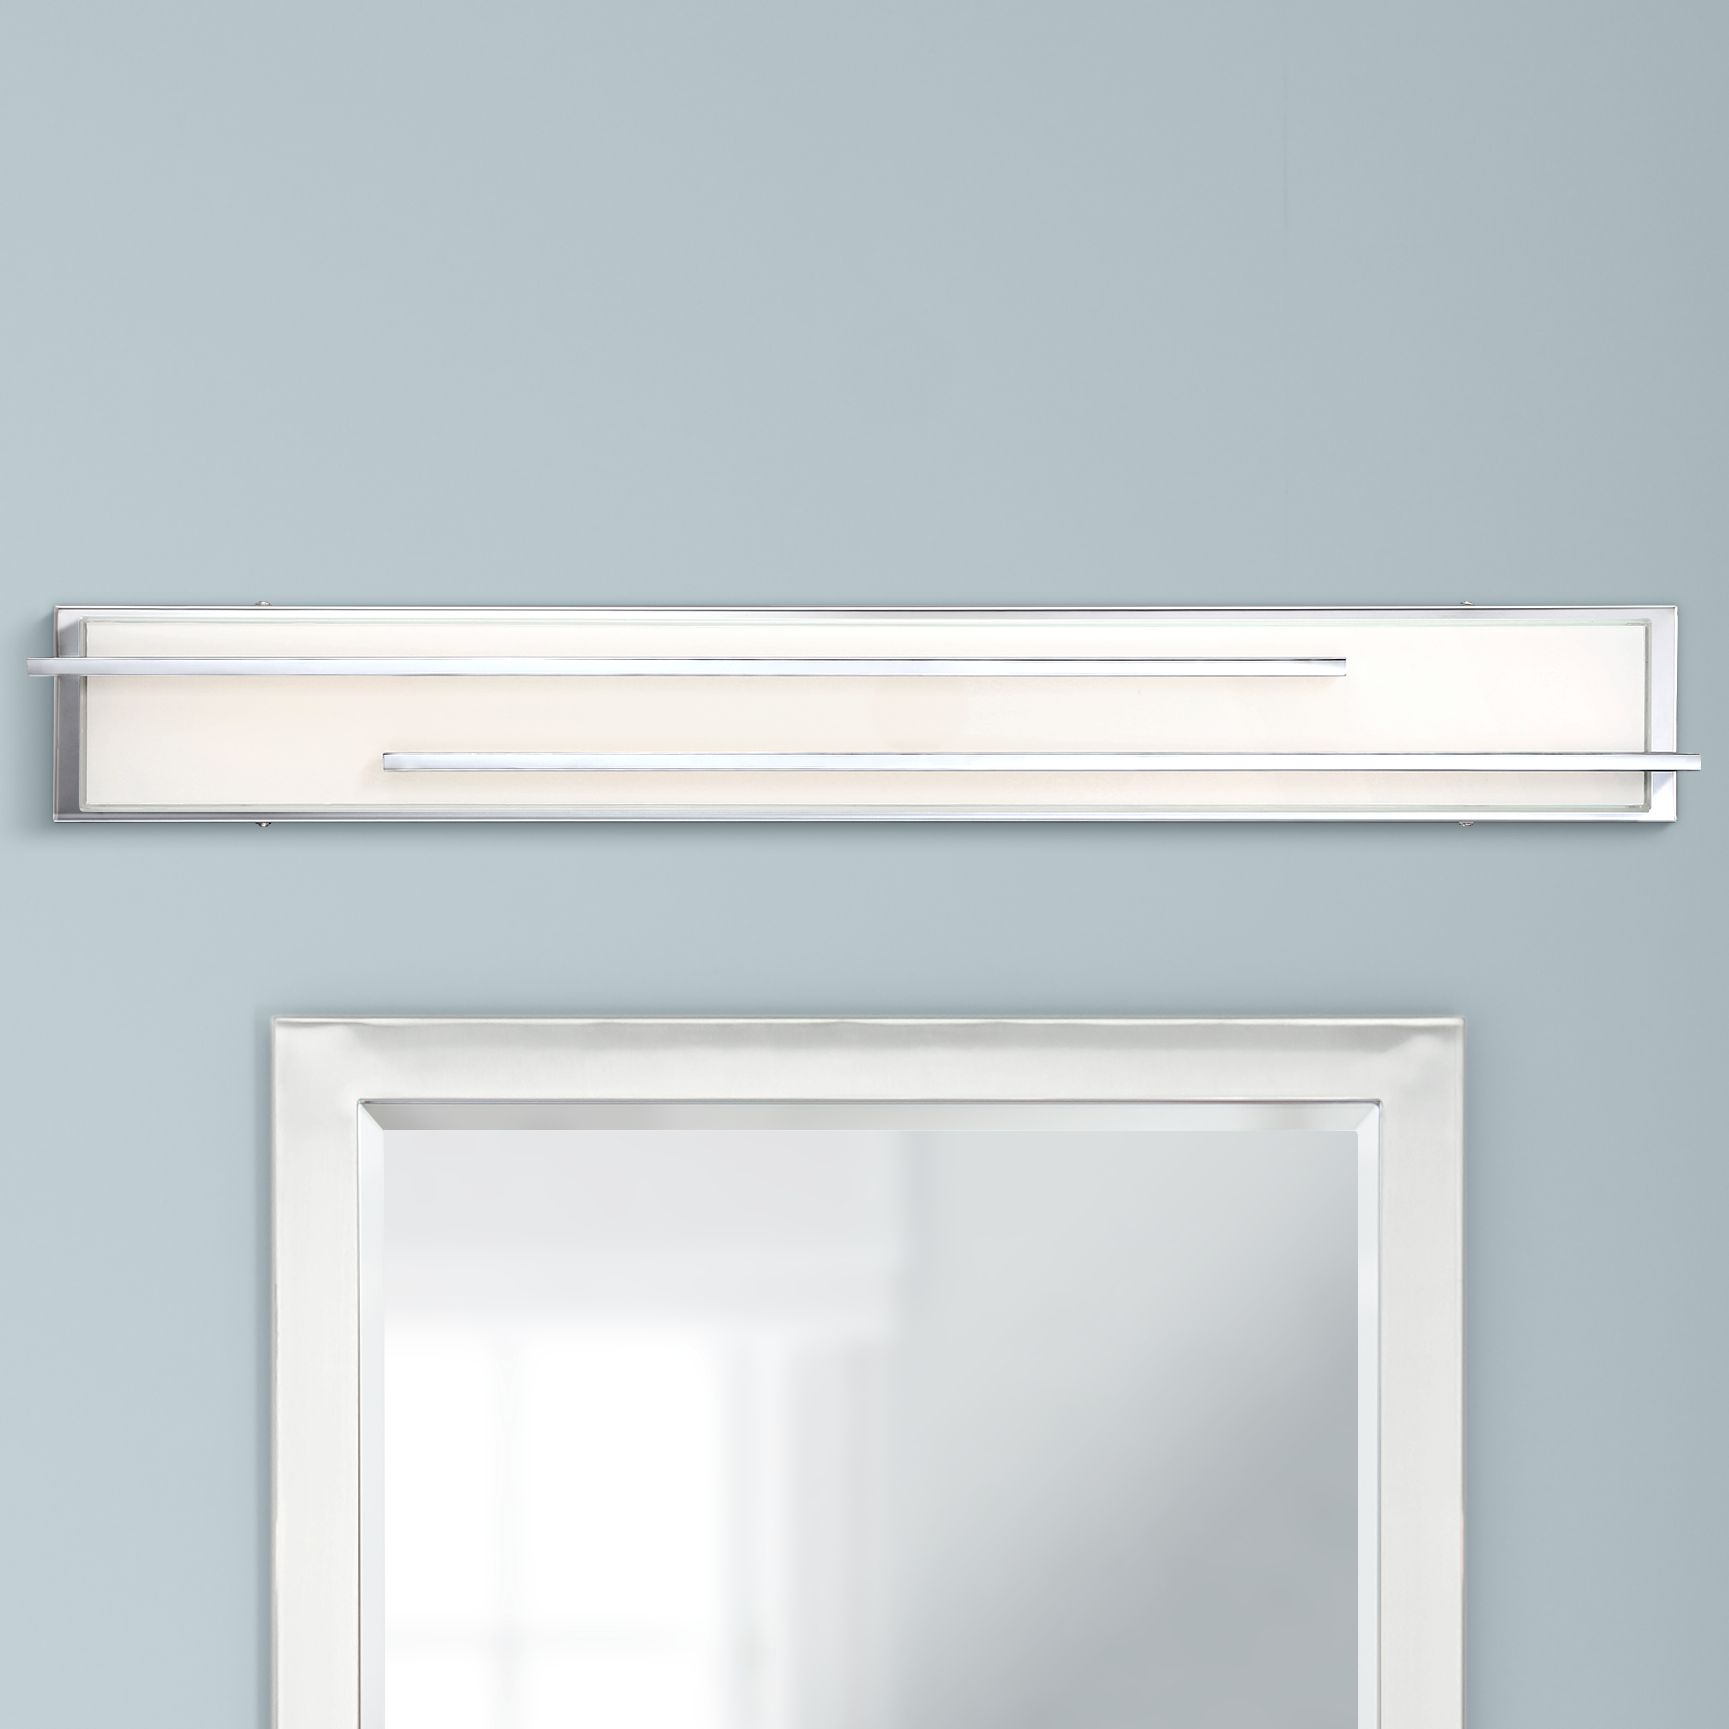 Possini Euro Design Jada Modern Wall Light Chrome Hardwire 33 3/4" Light Bar LED Fixture White Glass for Bedroom Bathroom Vanity Reading Living Room - image 1 of 7